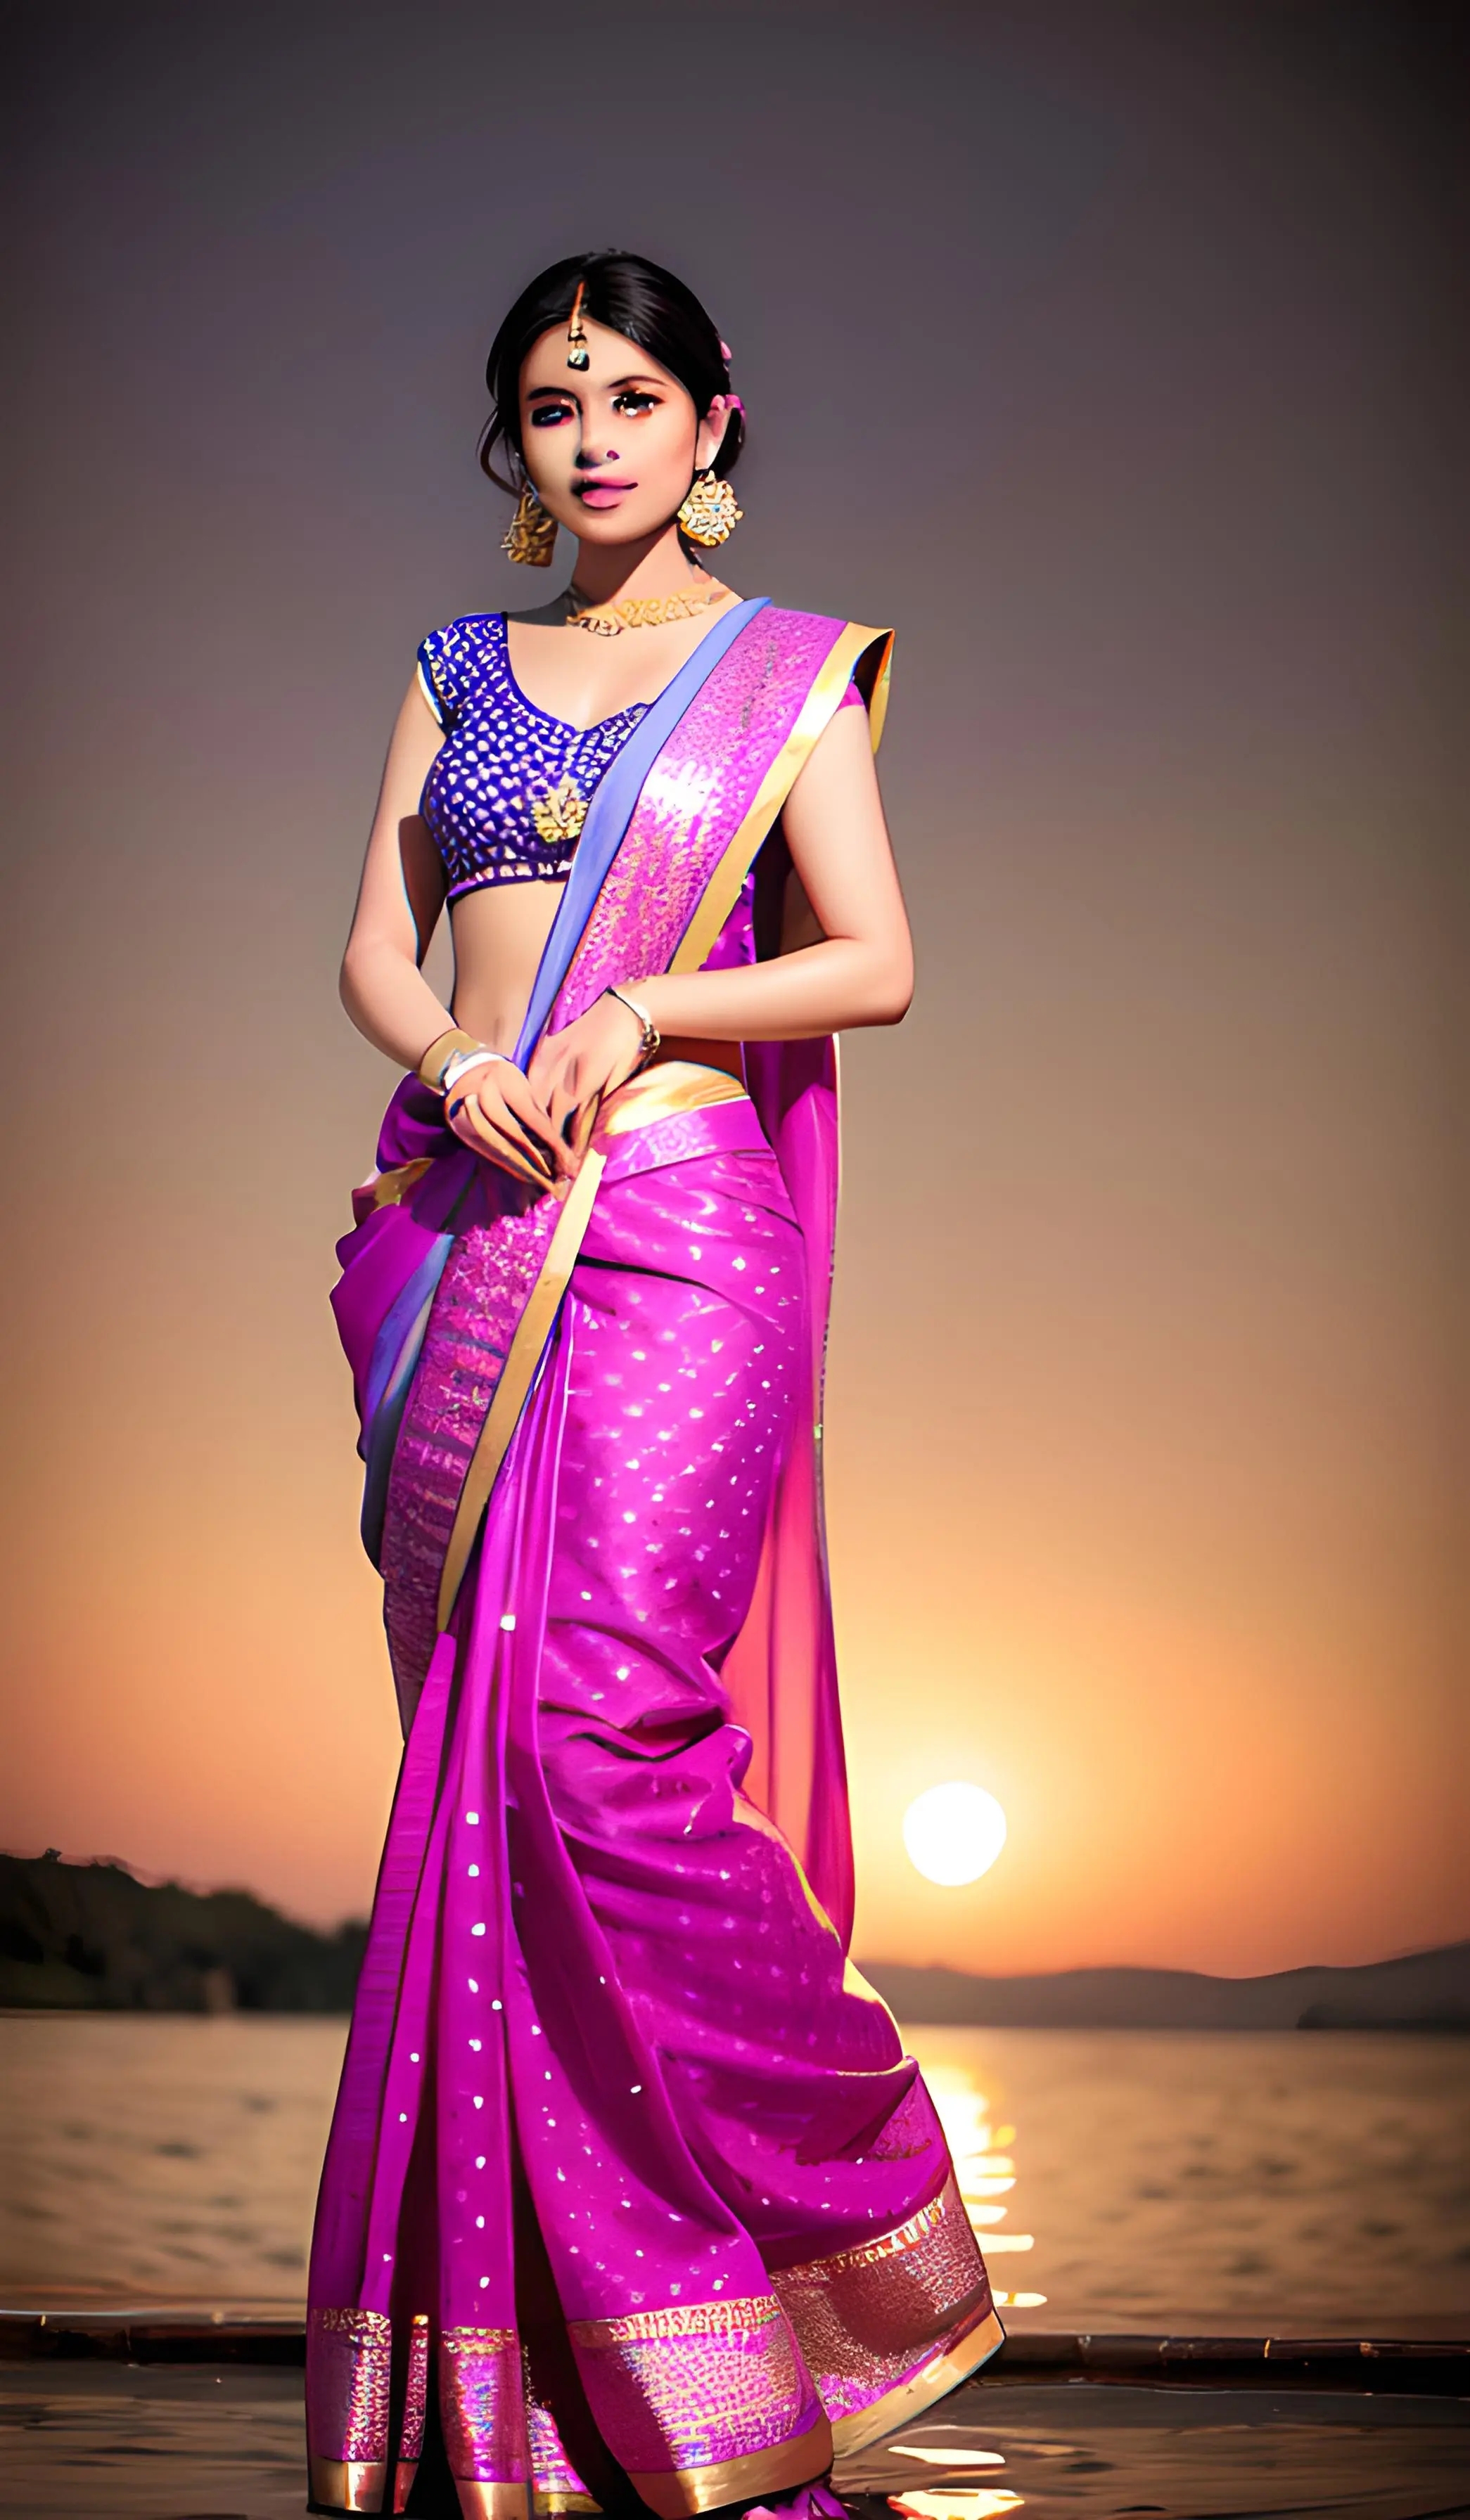 印度传统服饰纱丽欣赏